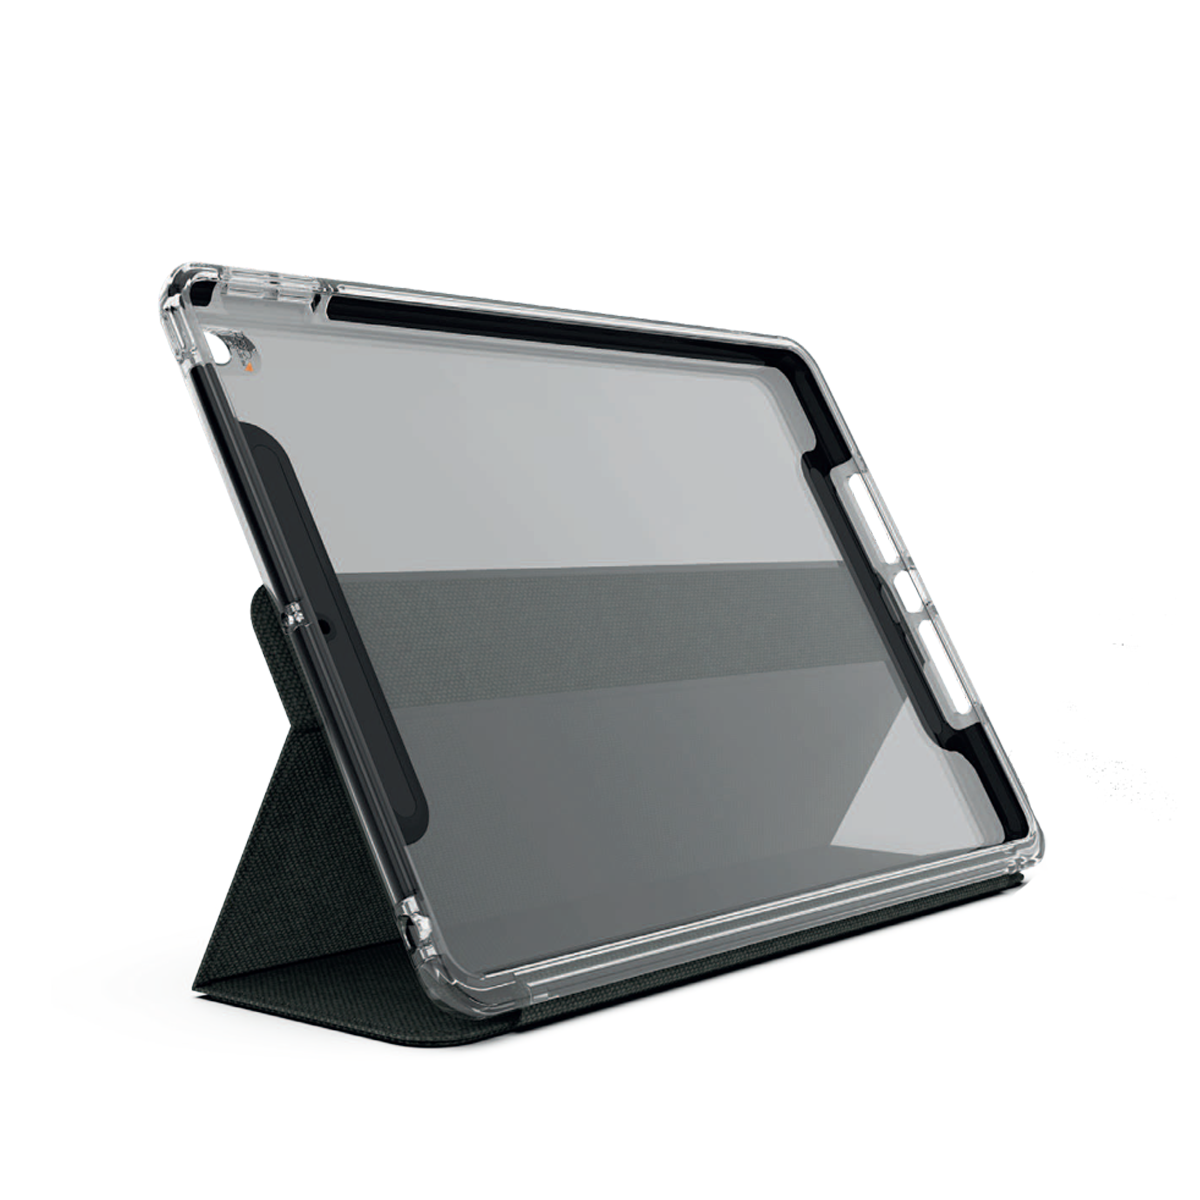 Ốp lưng Gear4 D3O Brompton cho iPad